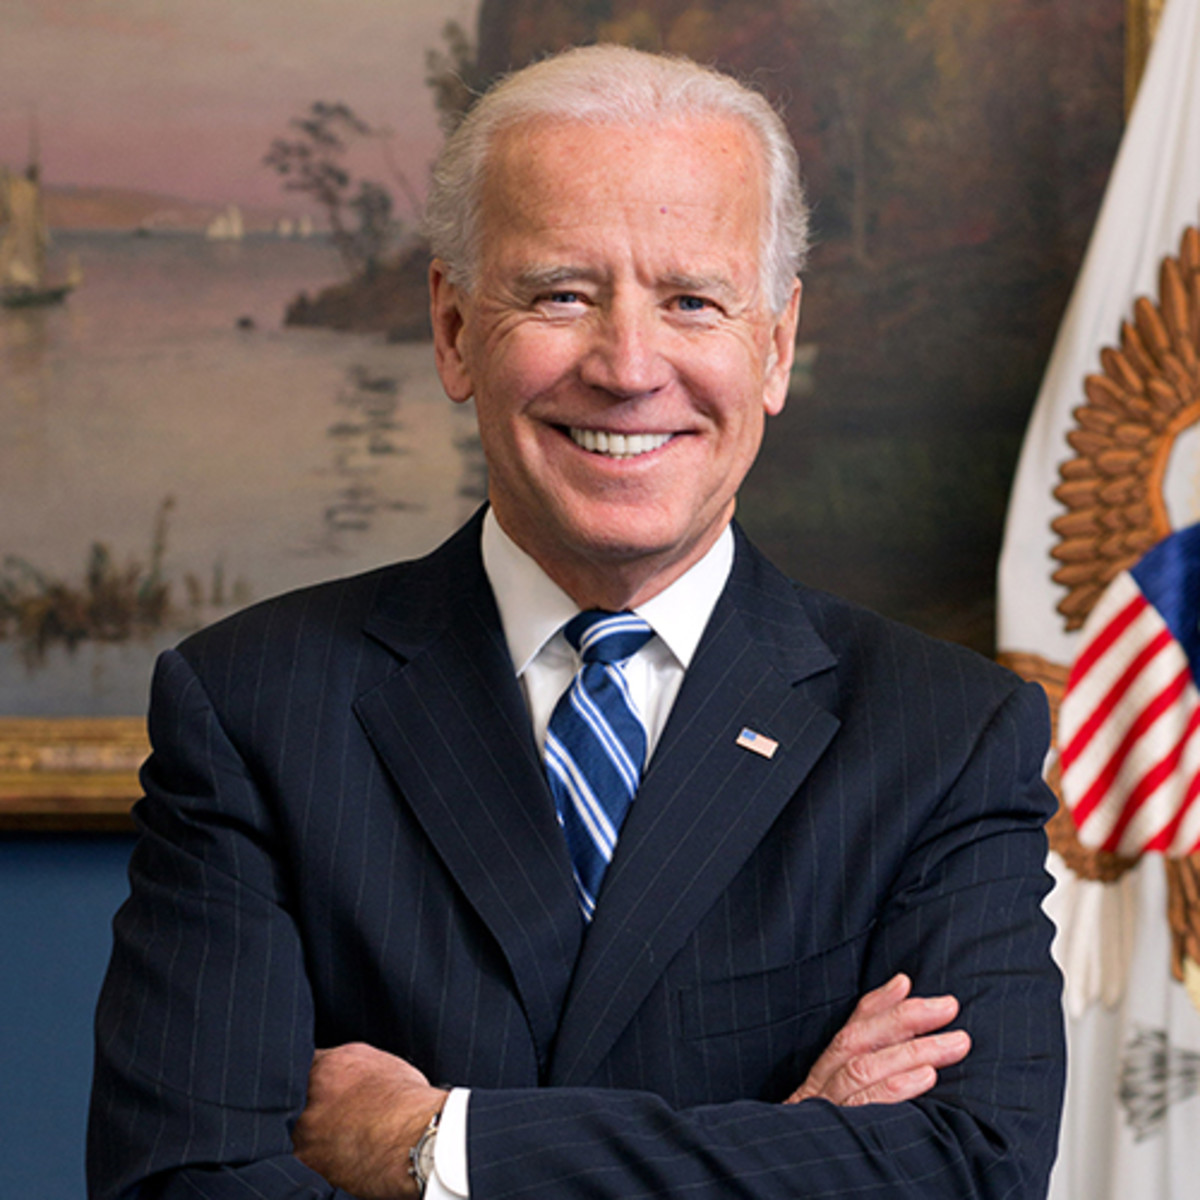     Elections américaines : le collège électoral confirme l'élection de Joe Biden

